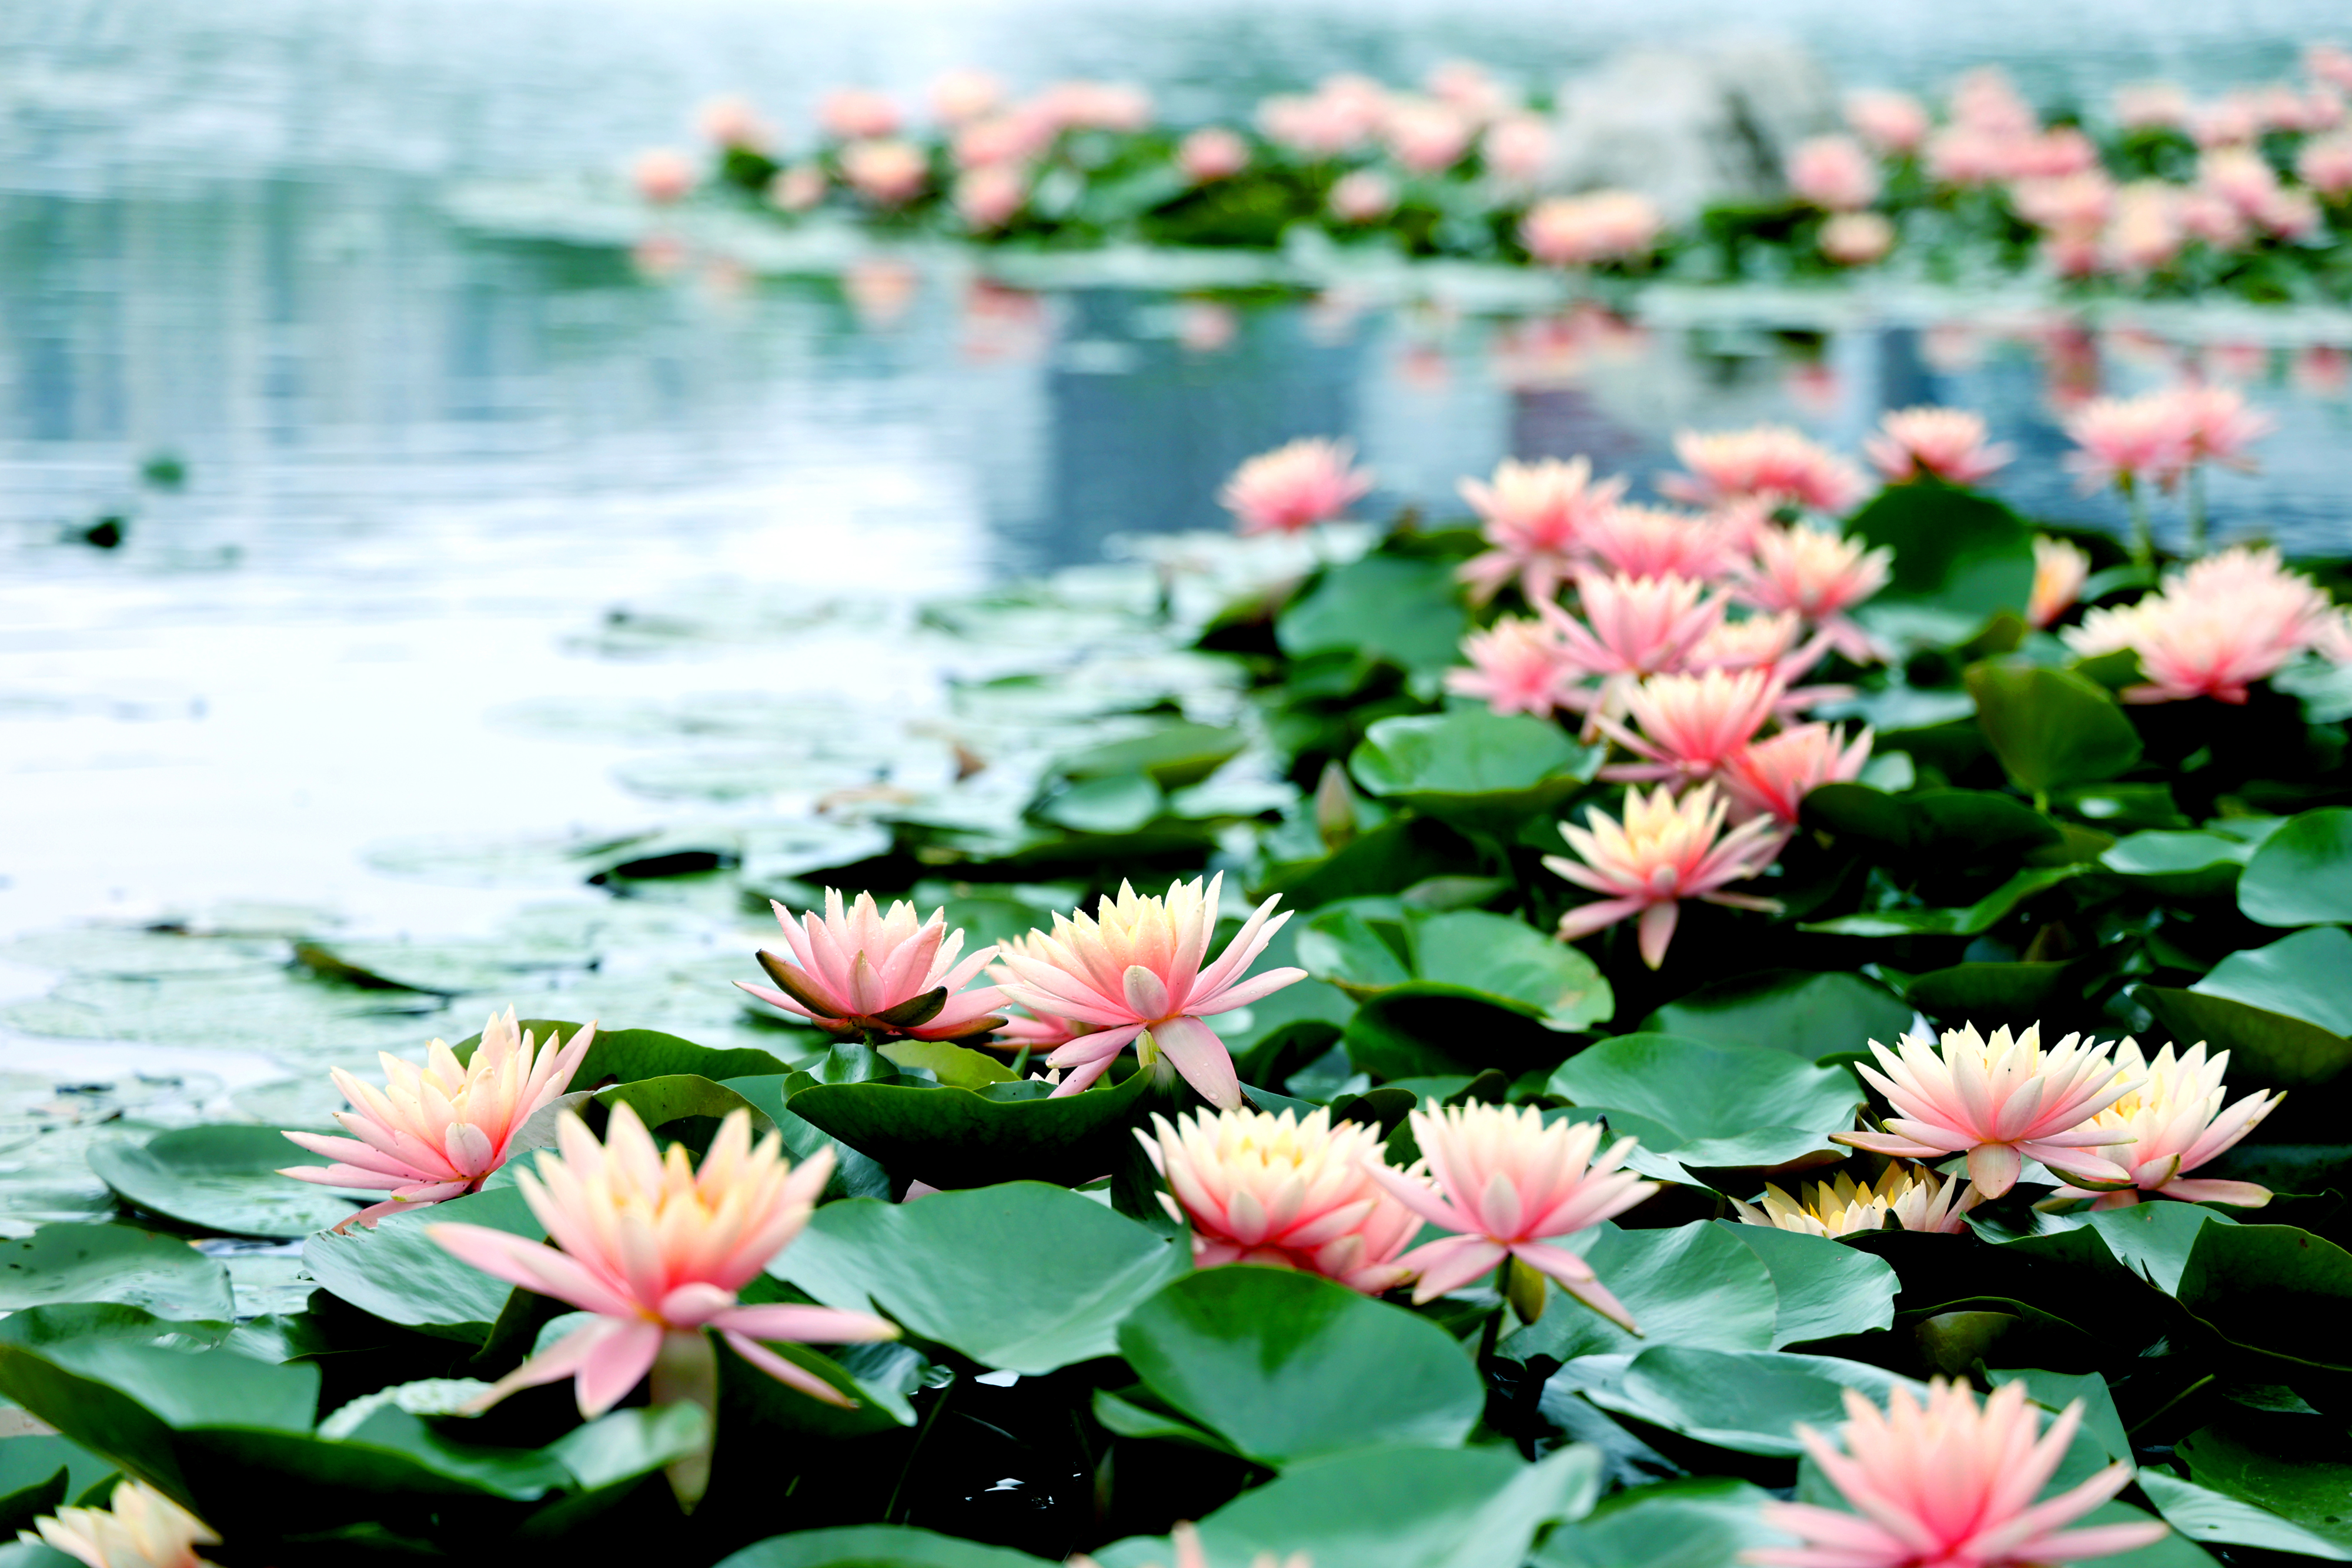 Lotus flowers enter blossoming season in Hangzhou City, Zhejiang Province. /CNSPHOTO